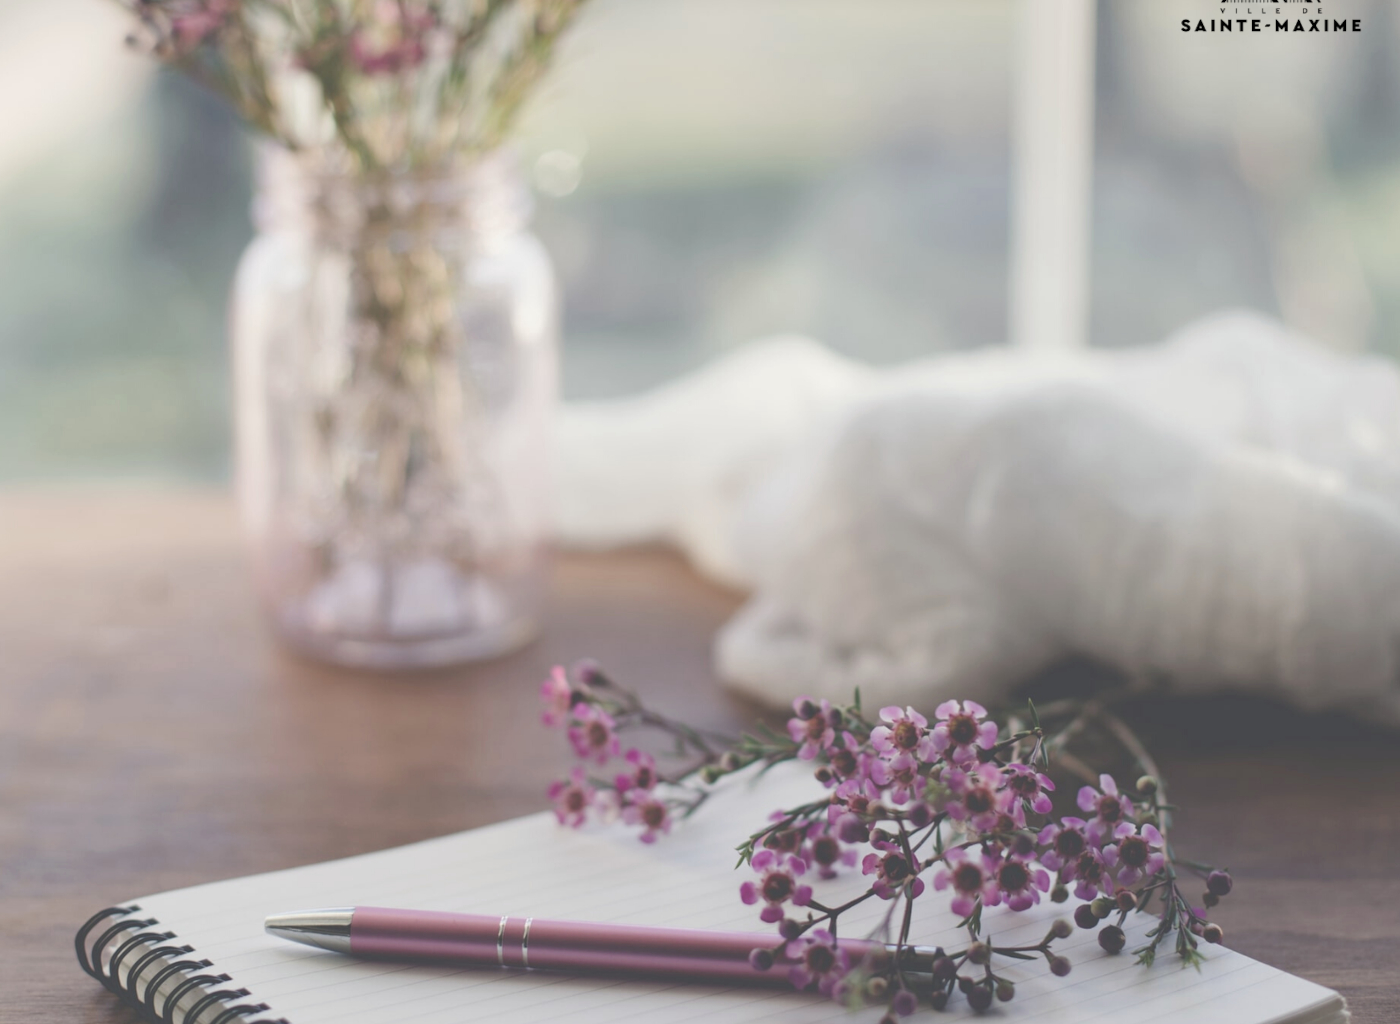 cahier et crayon et vase de fleurs